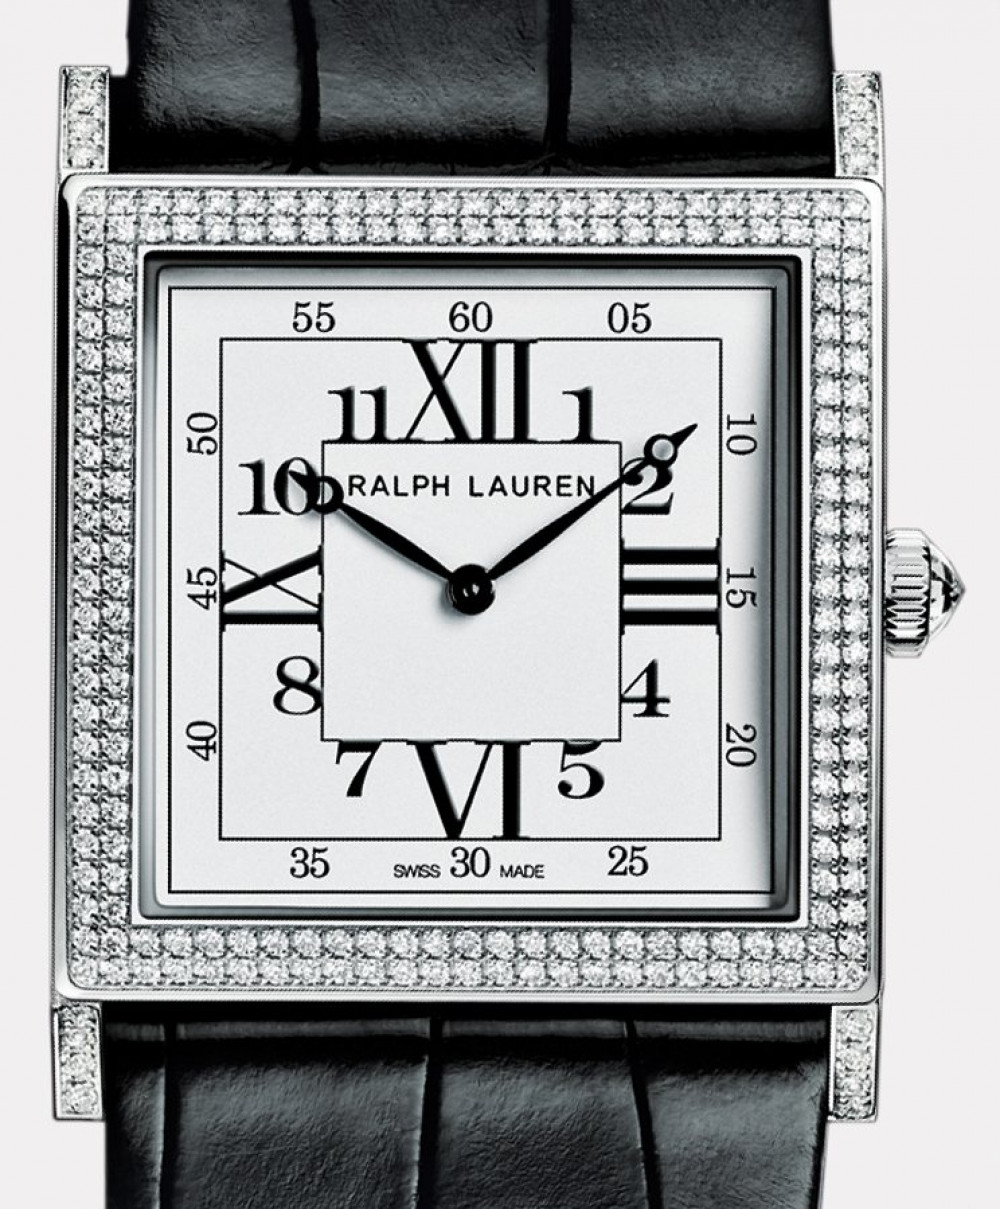 Zegarek firmy Ralph Lauren, model 867 Slim Classique Square